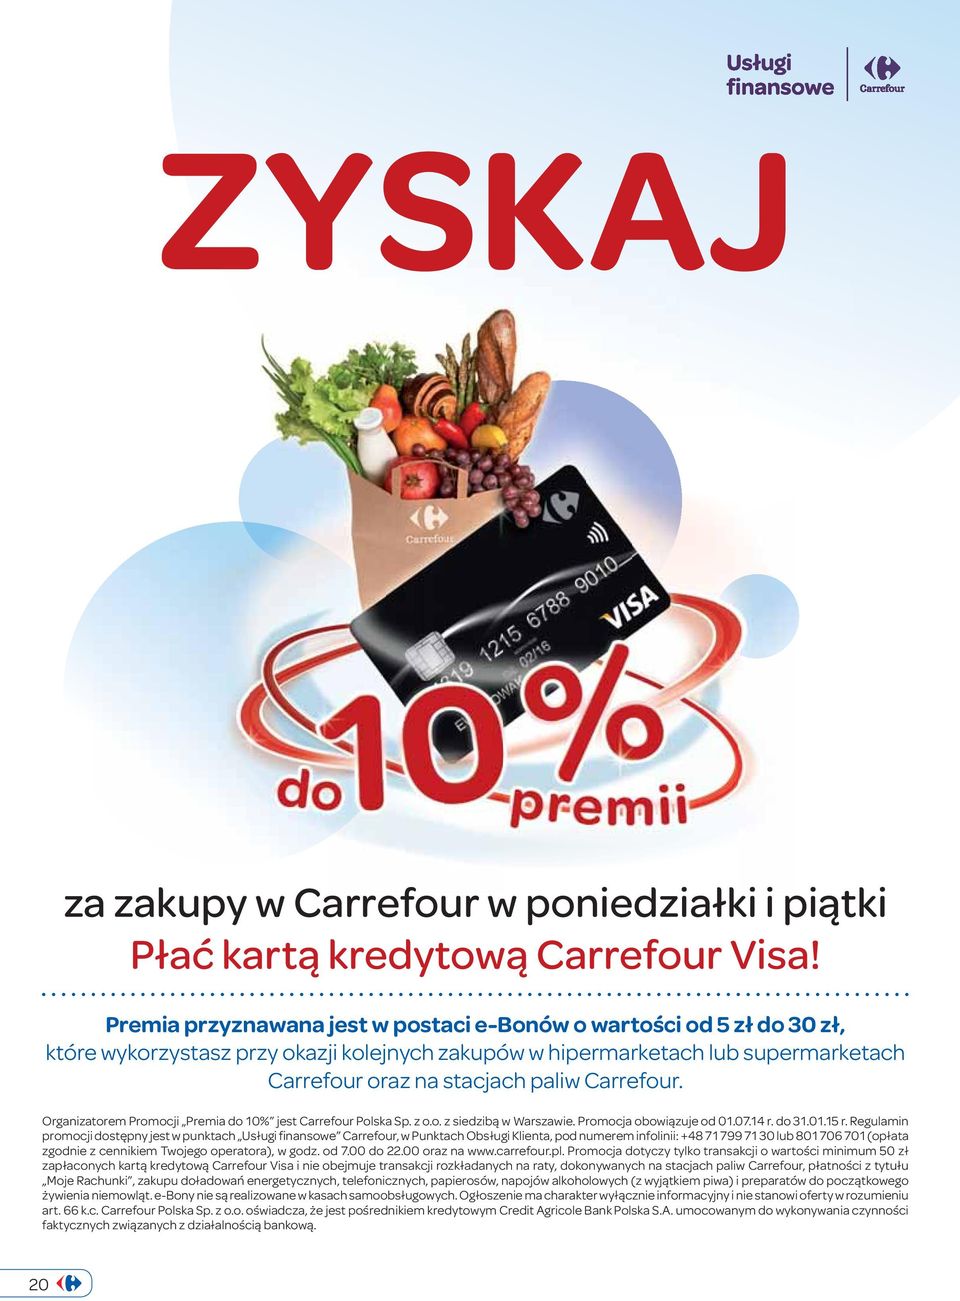 Organizatorem Promocji Premia do 10% jest Carrefour Polska Sp. z o.o. z siedzibą w Warszawie. Promocja obowiązuje od 01.07.14 r. do 31.01.15 r.